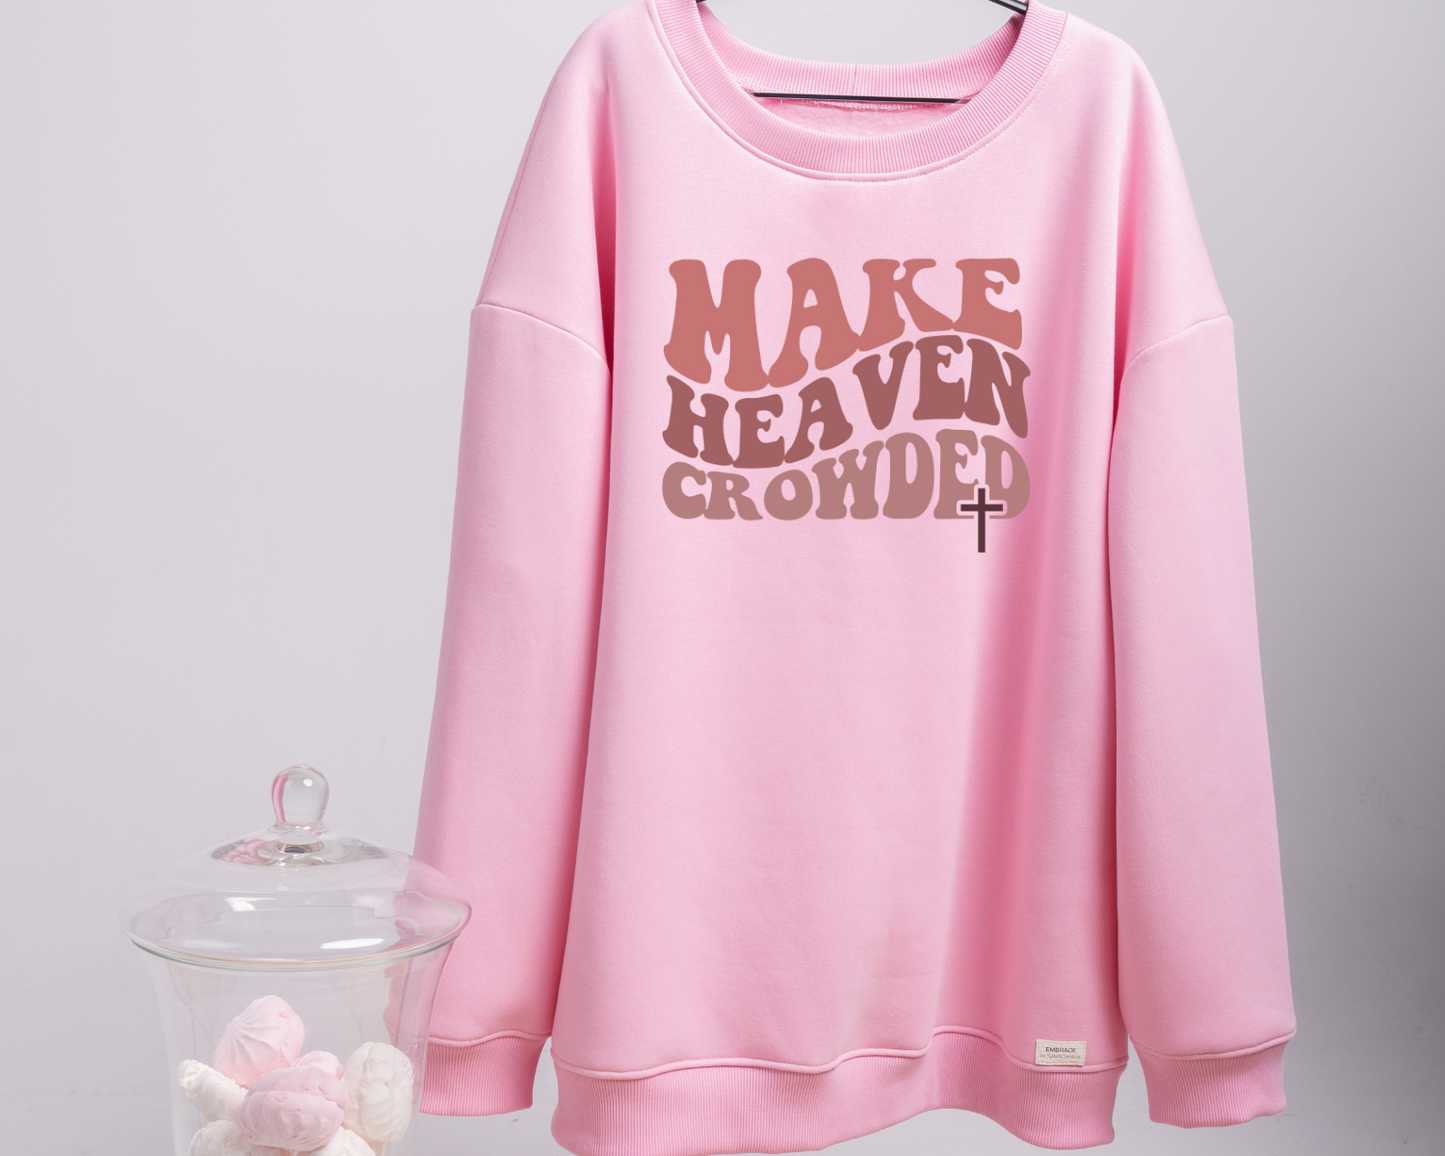 Make Heaven Crowded Tee/Sweatshirt/Hoodie